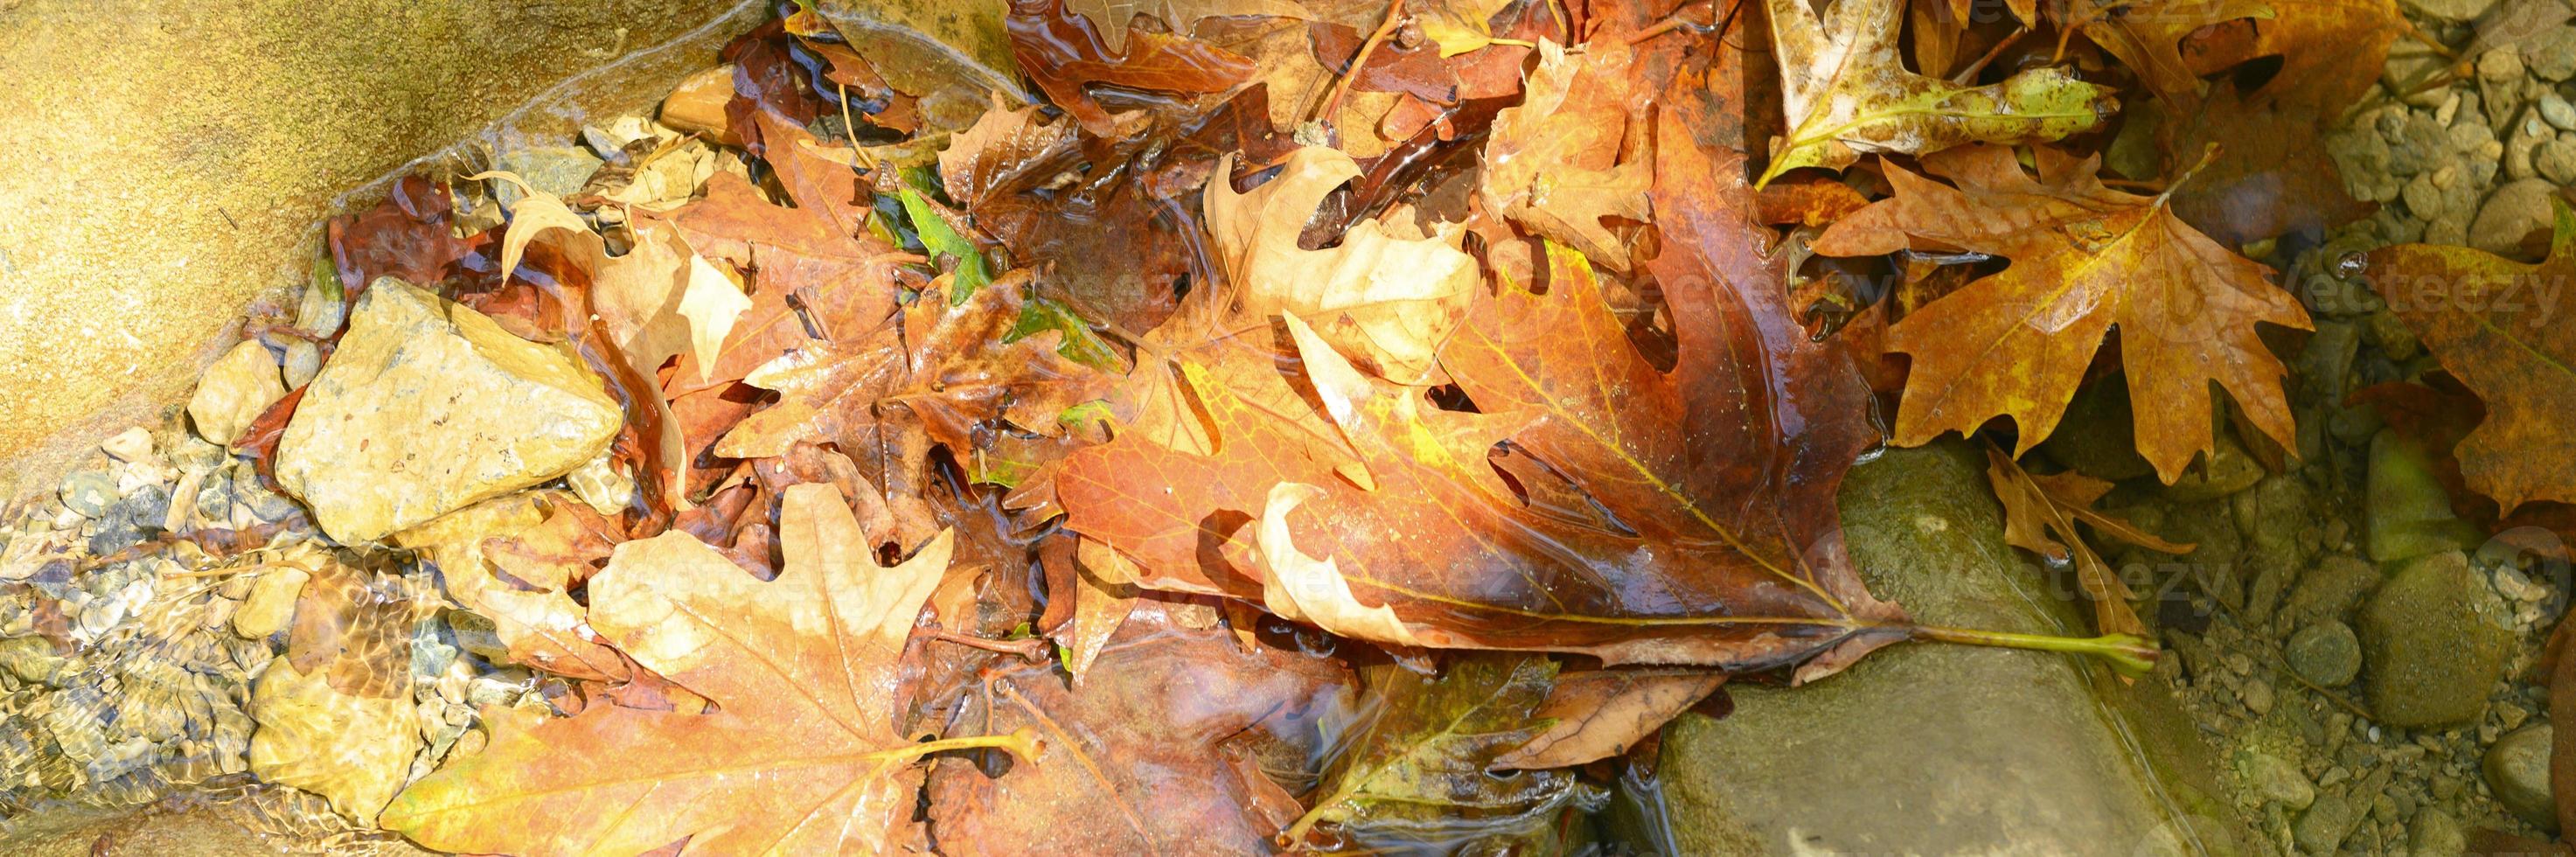 stapel natte gevallen herfst esdoorn bladeren in het water en rotsen foto